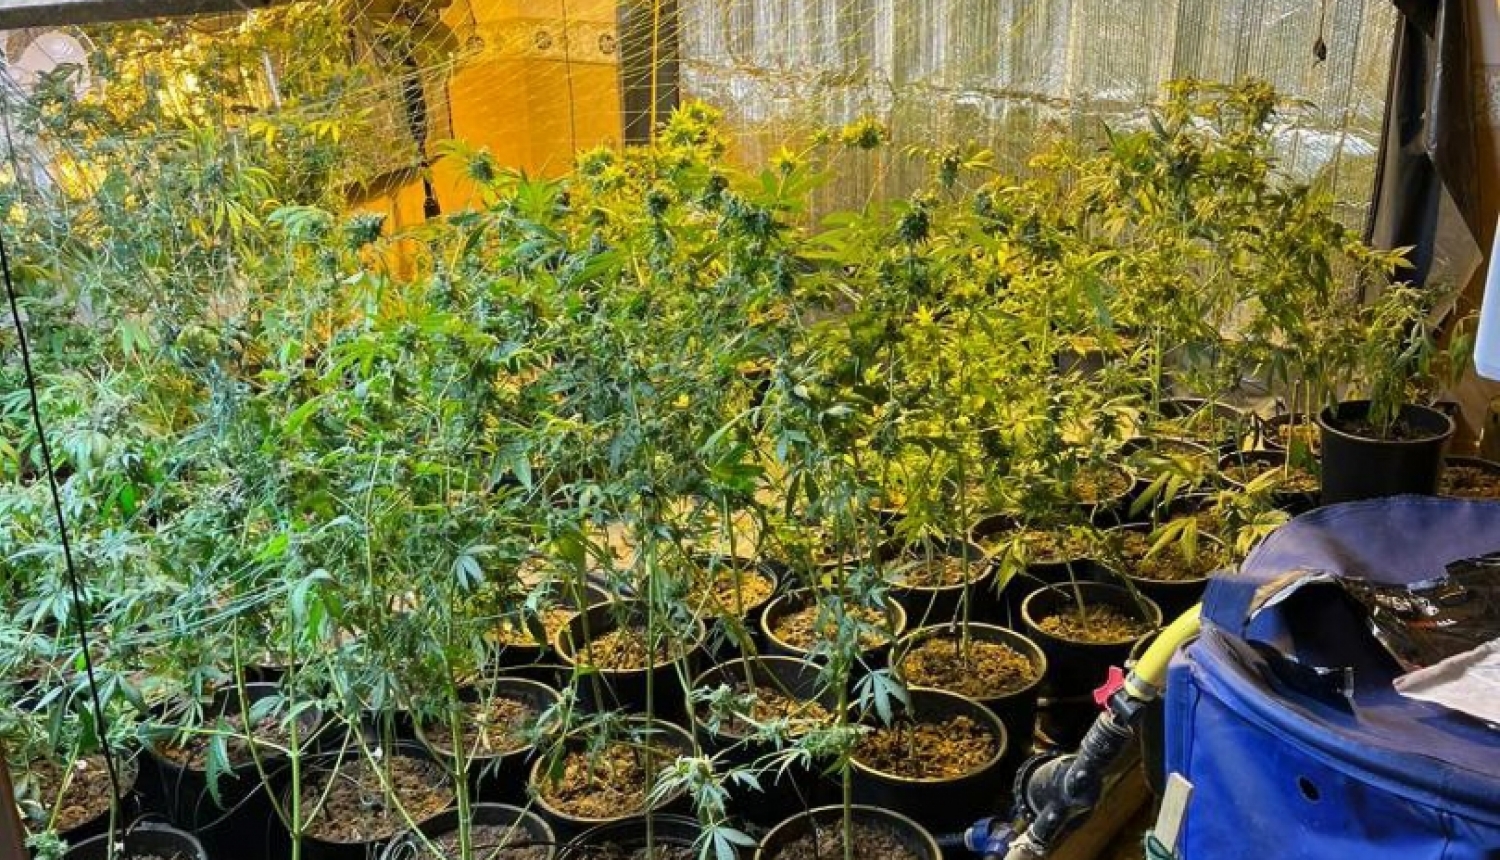 Kādas Rīgas ēkas bēniņos atrasta marihuānas audzētava; izņemti 10 kg marihuānas